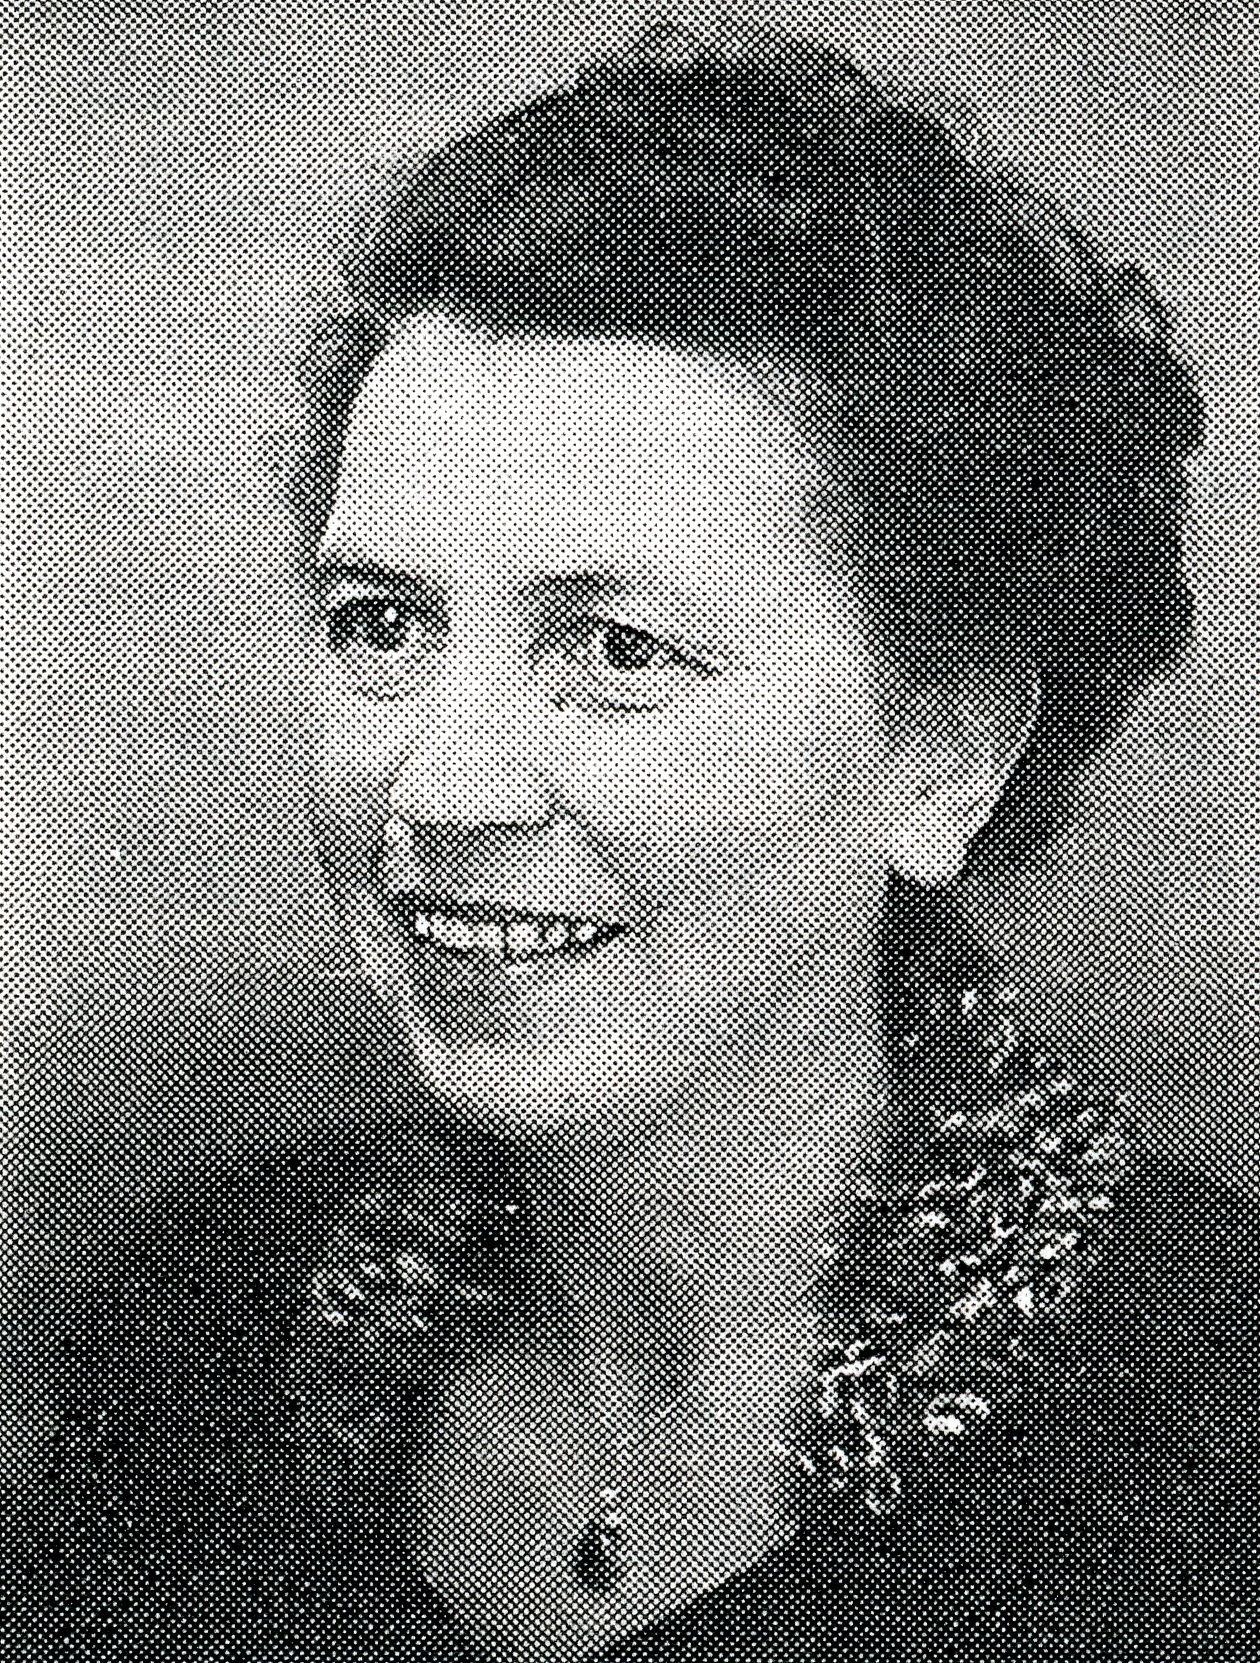 Meta Lörzer (1900-1989)